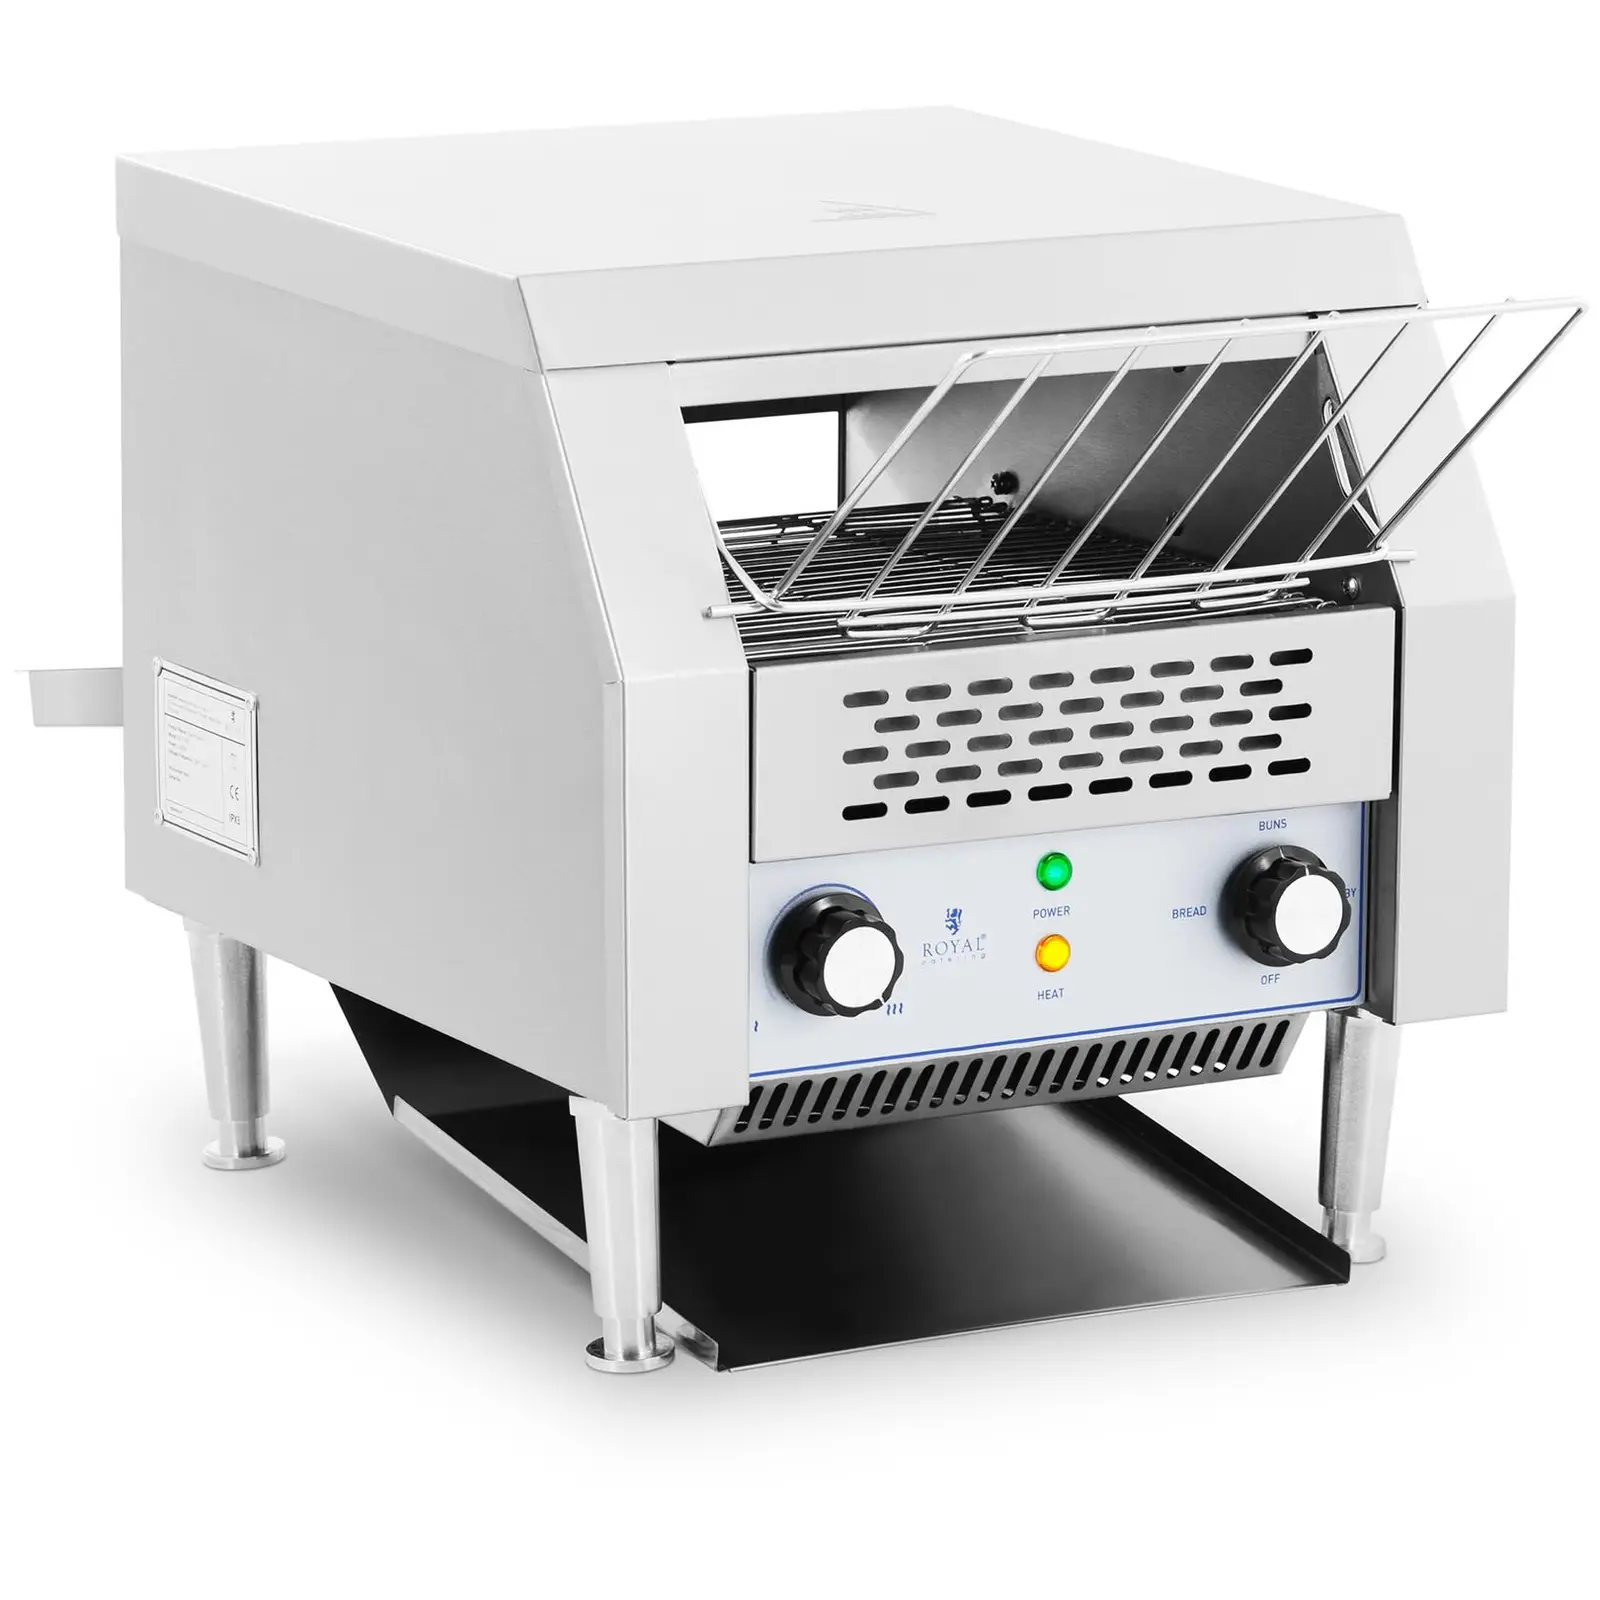 Tekoči toaster - 2,200 W- Royal Catering - 3 funkcije